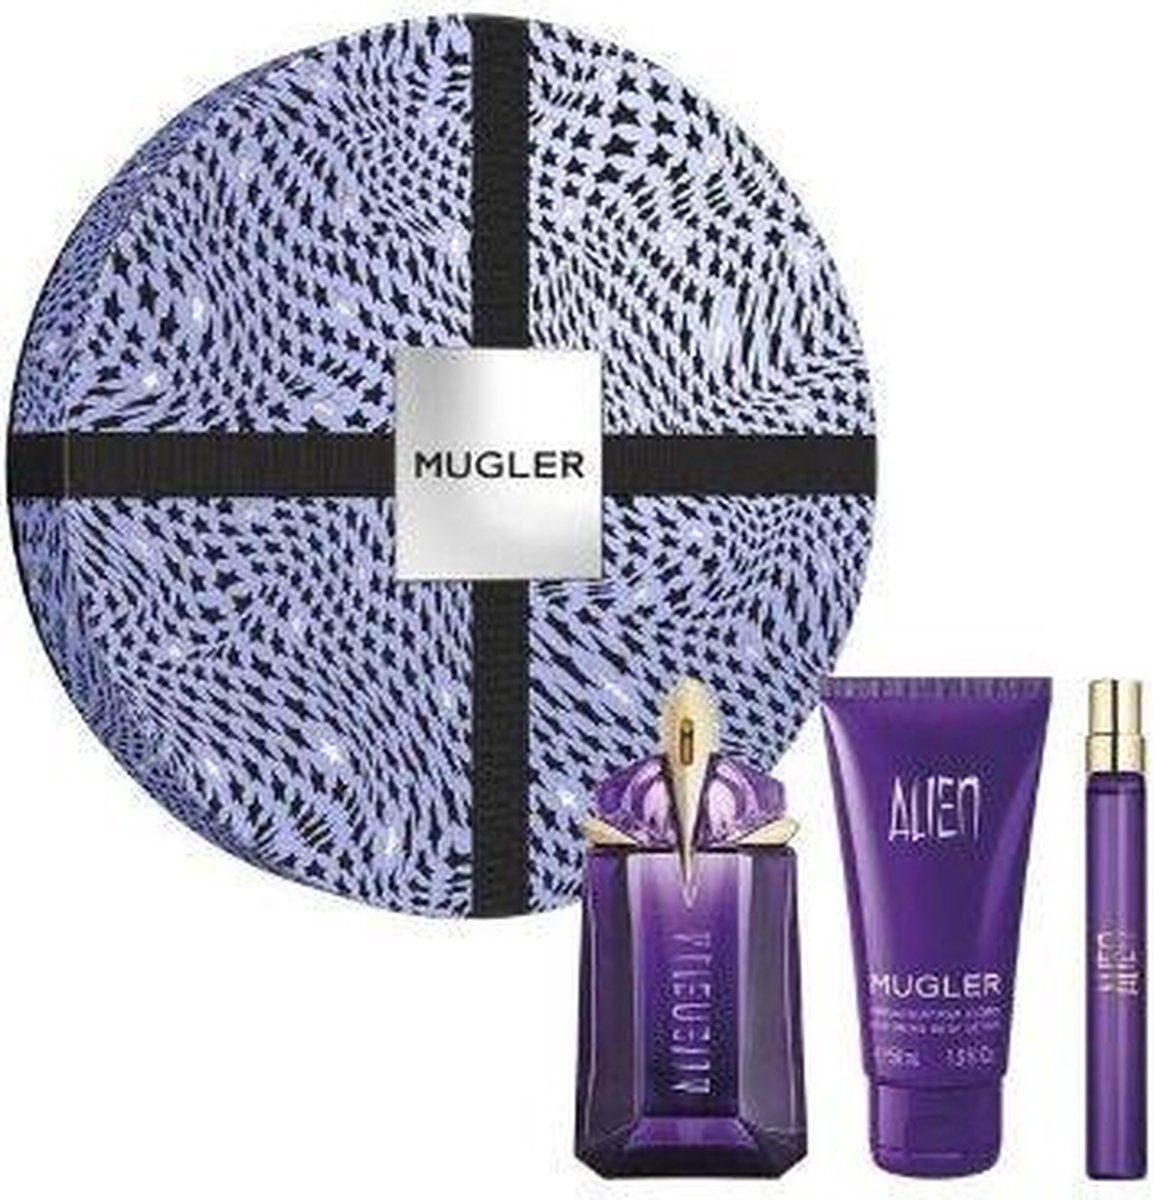 Mugler Alien Eau De Parfum 60 Ml + Tělové Mléko 50 Ml + Eau De Parfum 10 Ml Woman Gift Set